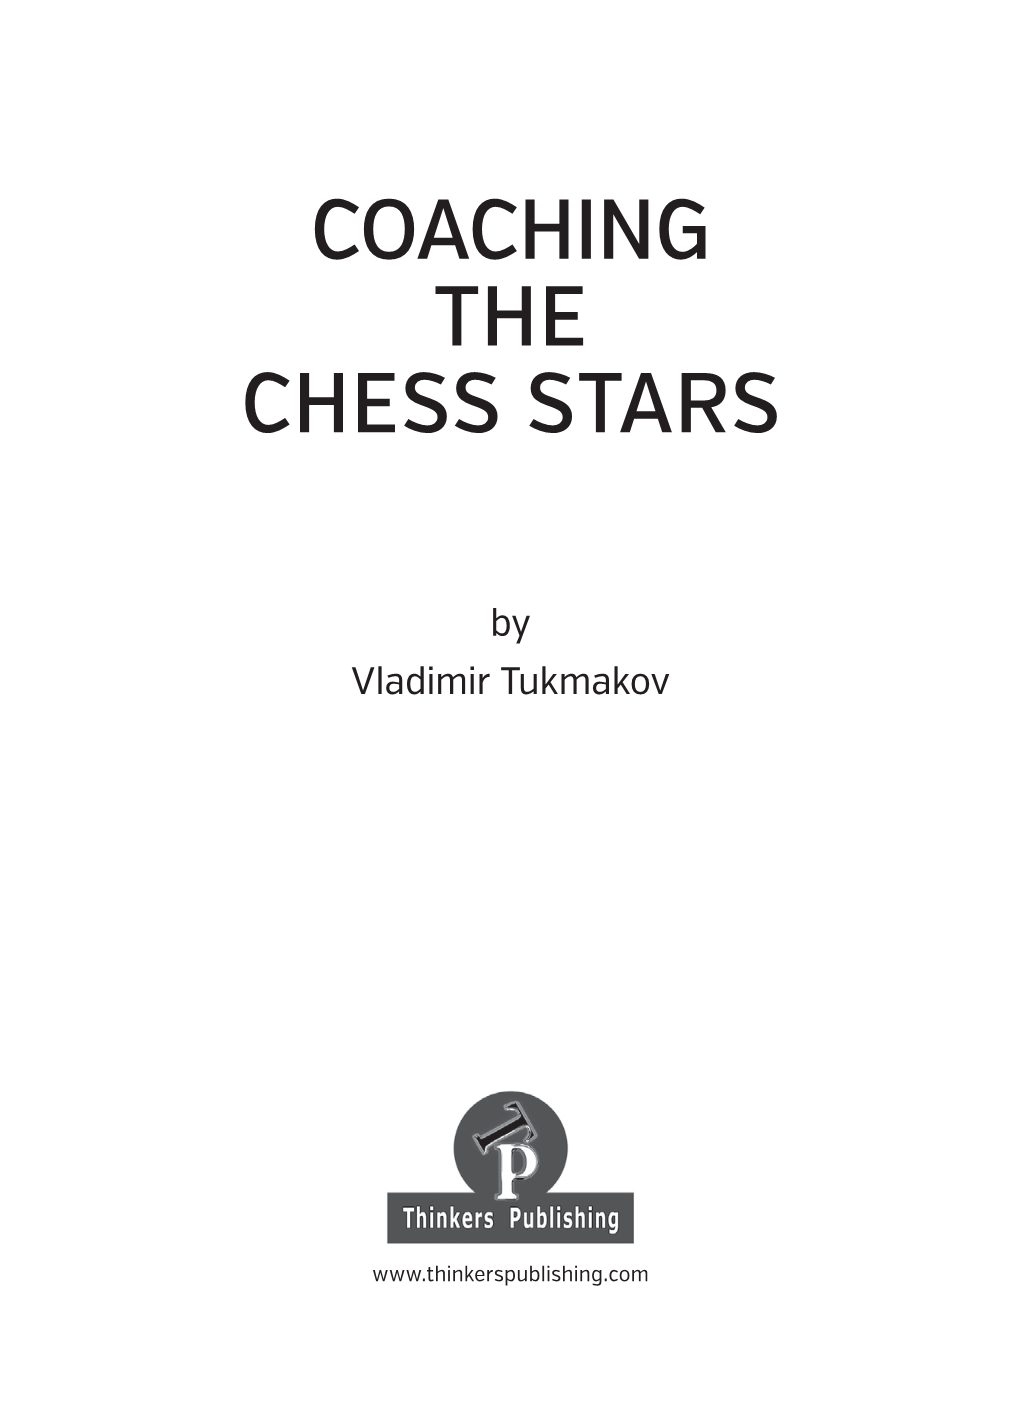 Coaching the Chess Stars